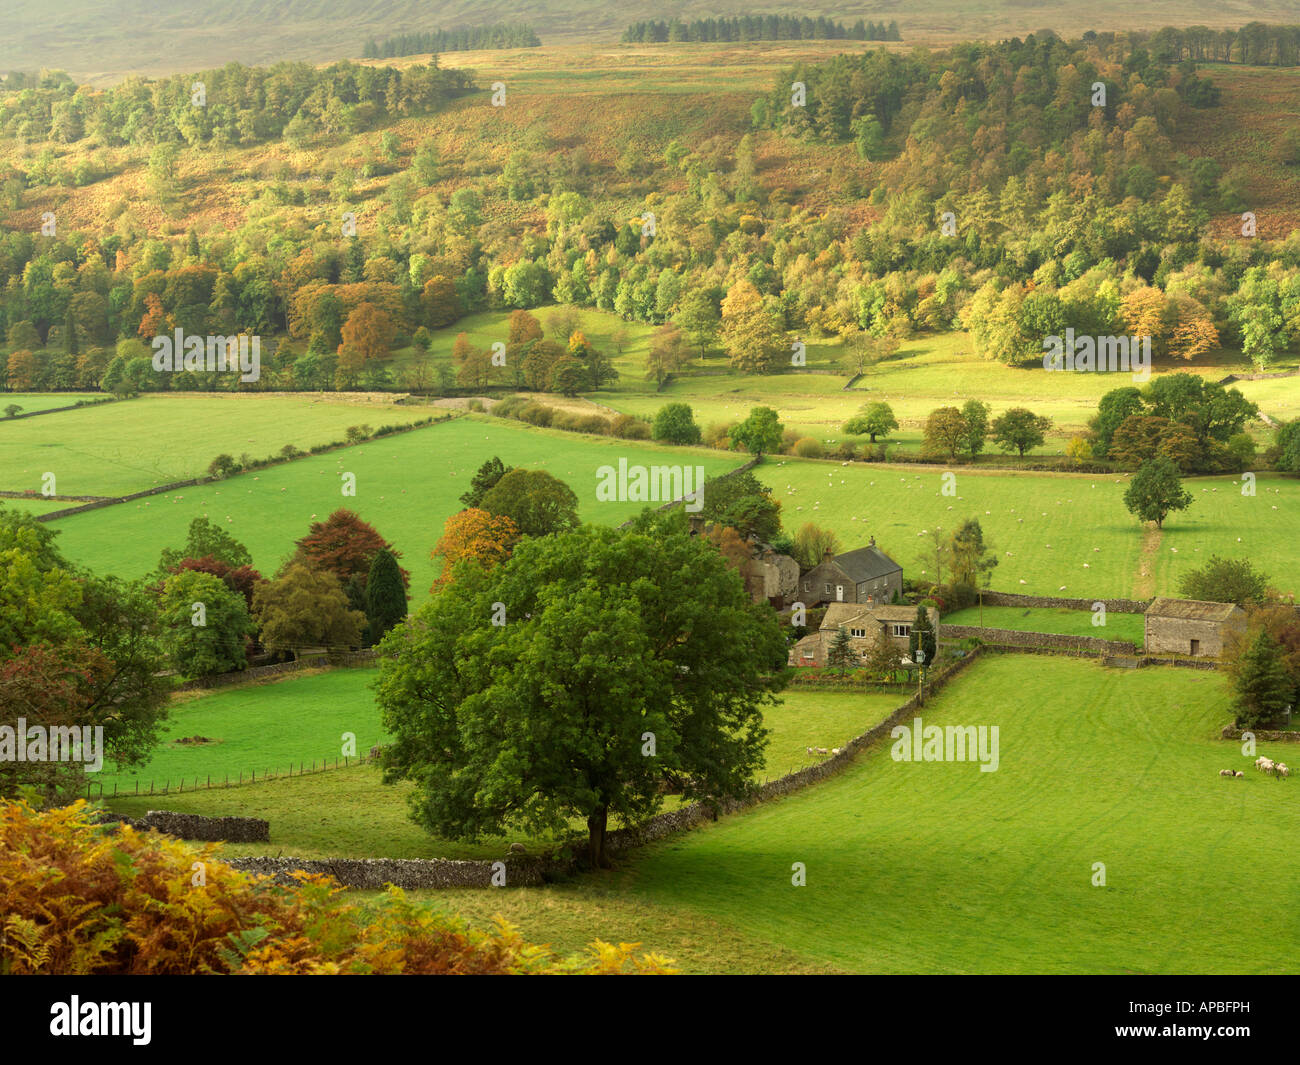 Royaume-uni Yorkshire Yorkshire Dales National Park de pittoresque rural farm dans la campagne au début de l'automne Banque D'Images